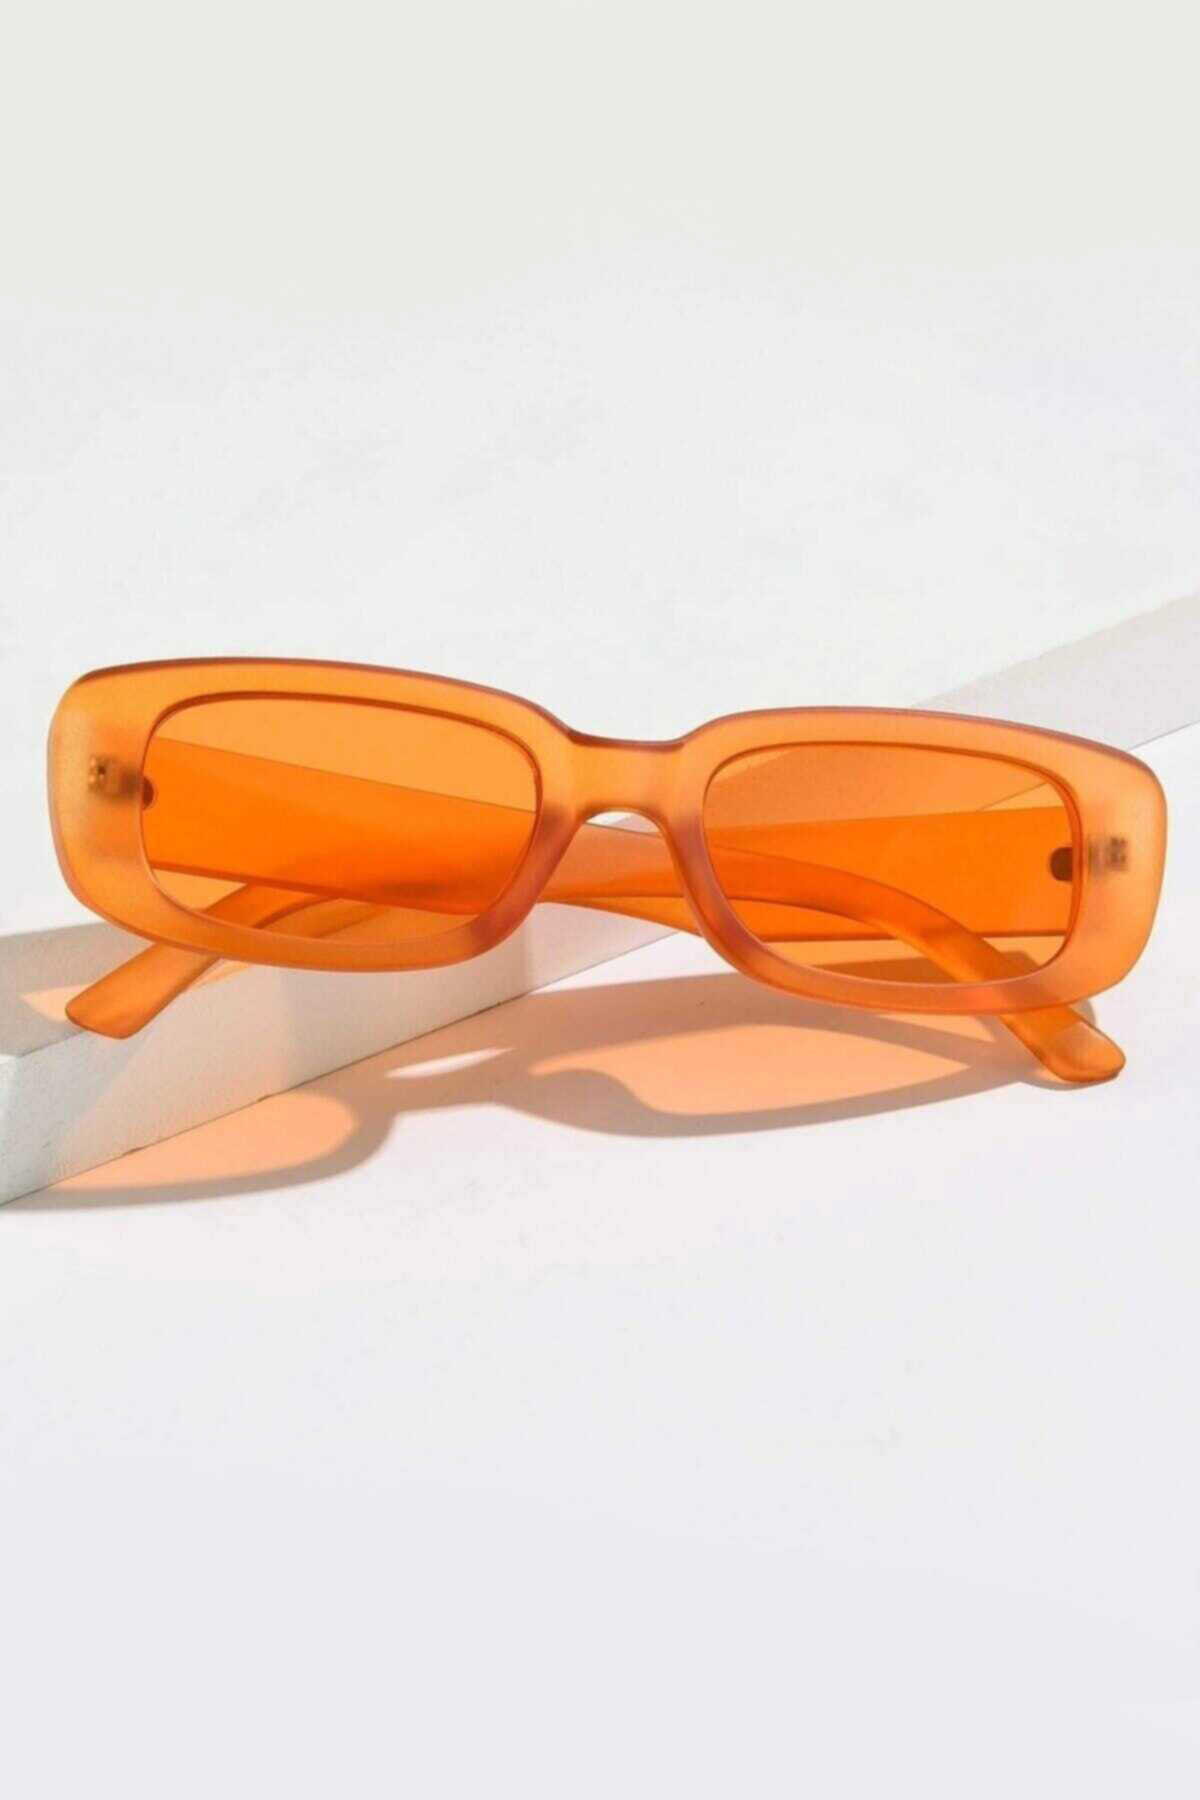 عینک آفتابی زنانه فریم ضخیم نارنجی برند Mathilda Aksesuar 